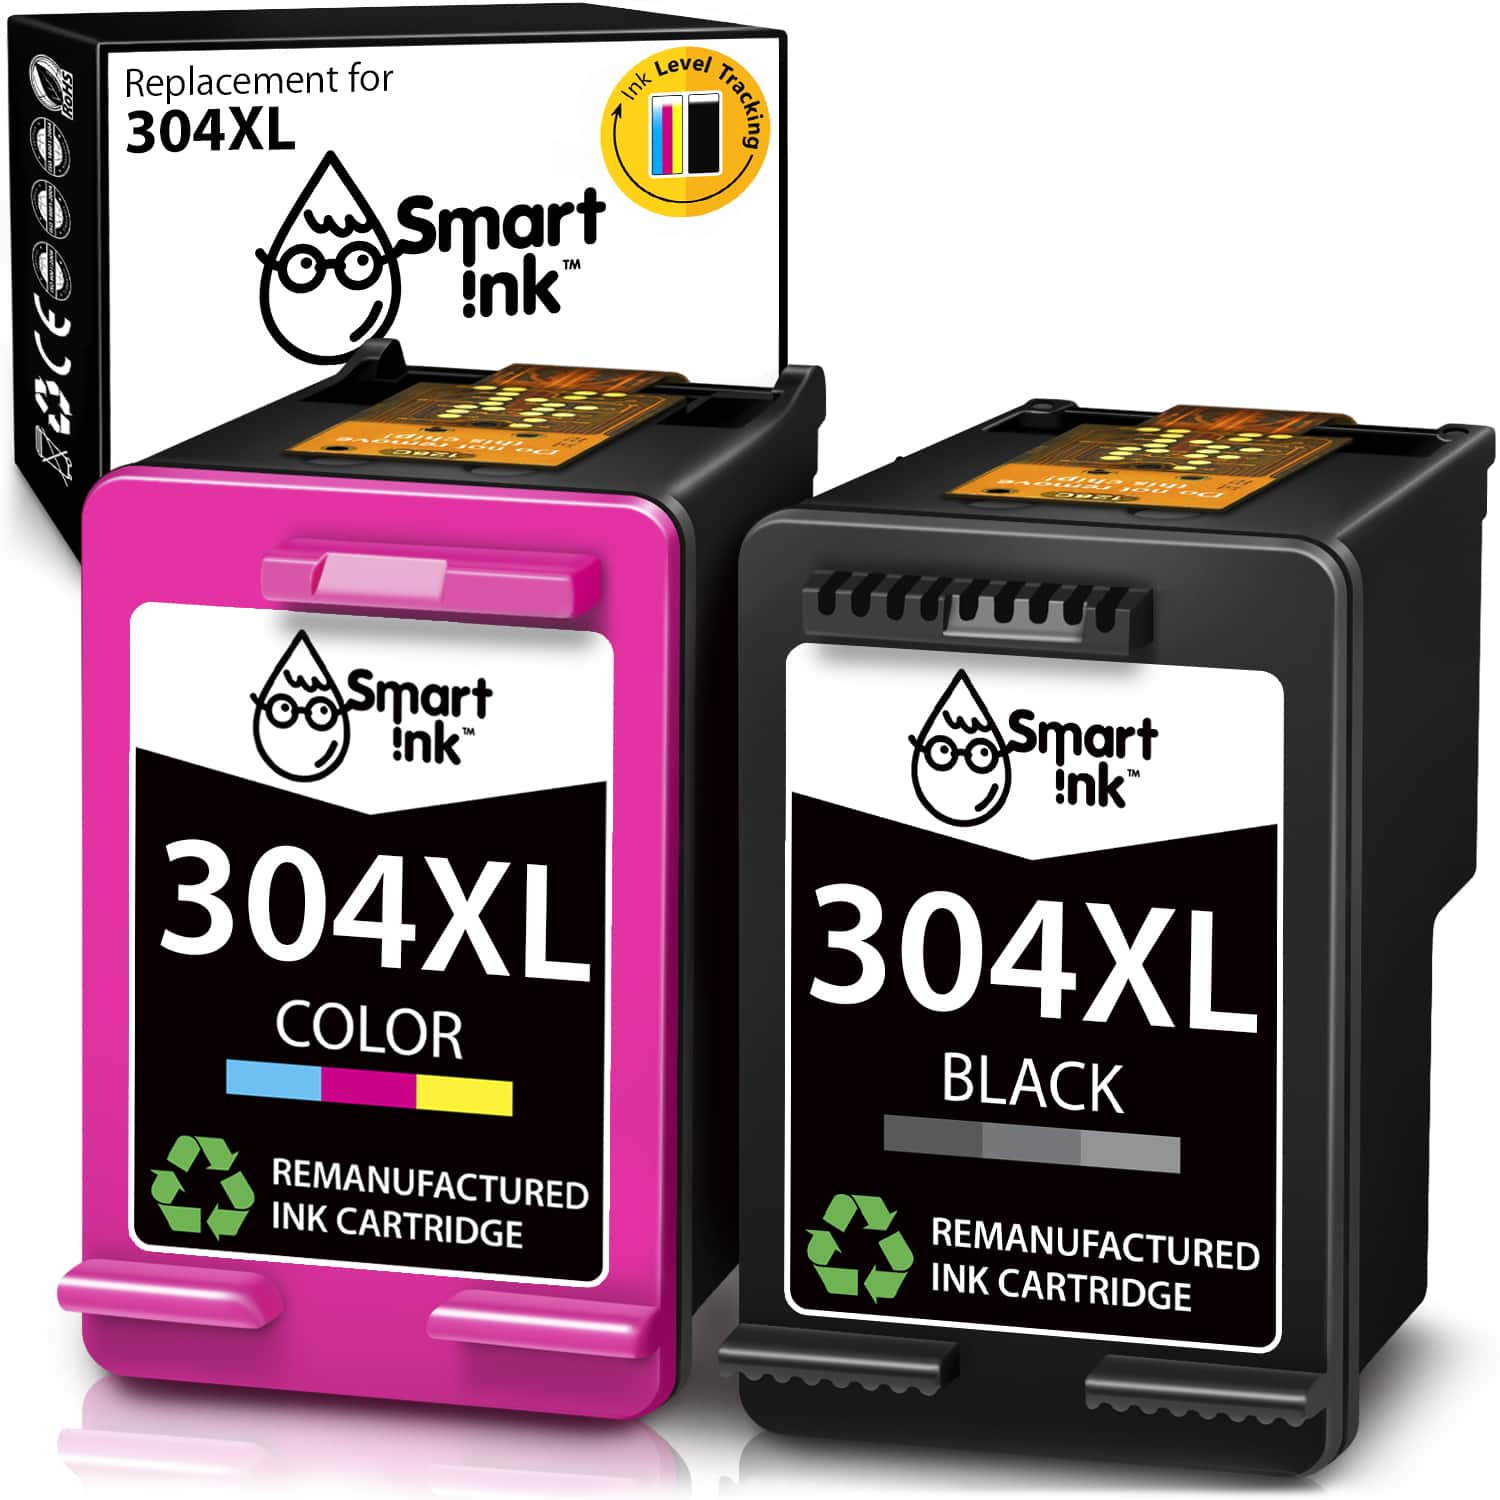 Ingrijpen ik heb honger zweep HP 304 XL Replacement Ink Cartridges - Buy HP 304 XL Cartridges in EU